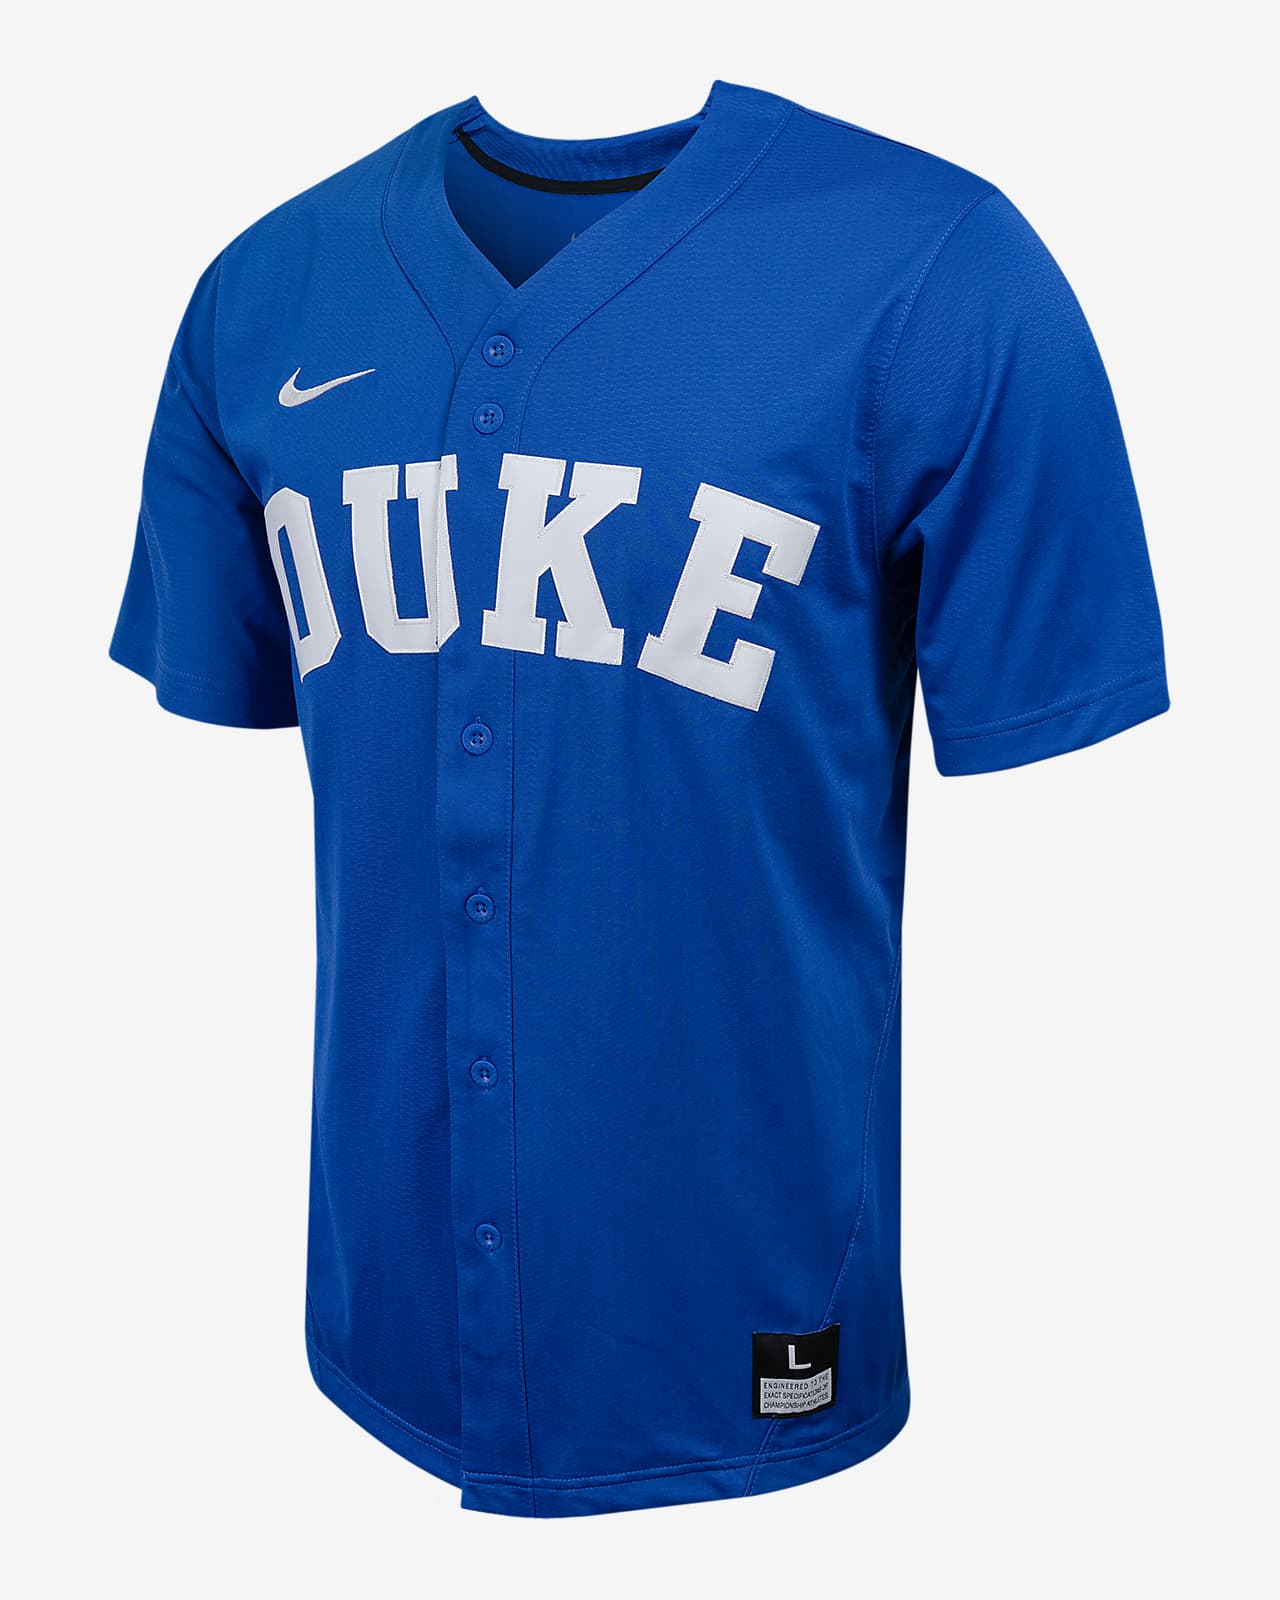 Duke Men's Nike College Full-Button Baseball Jersey